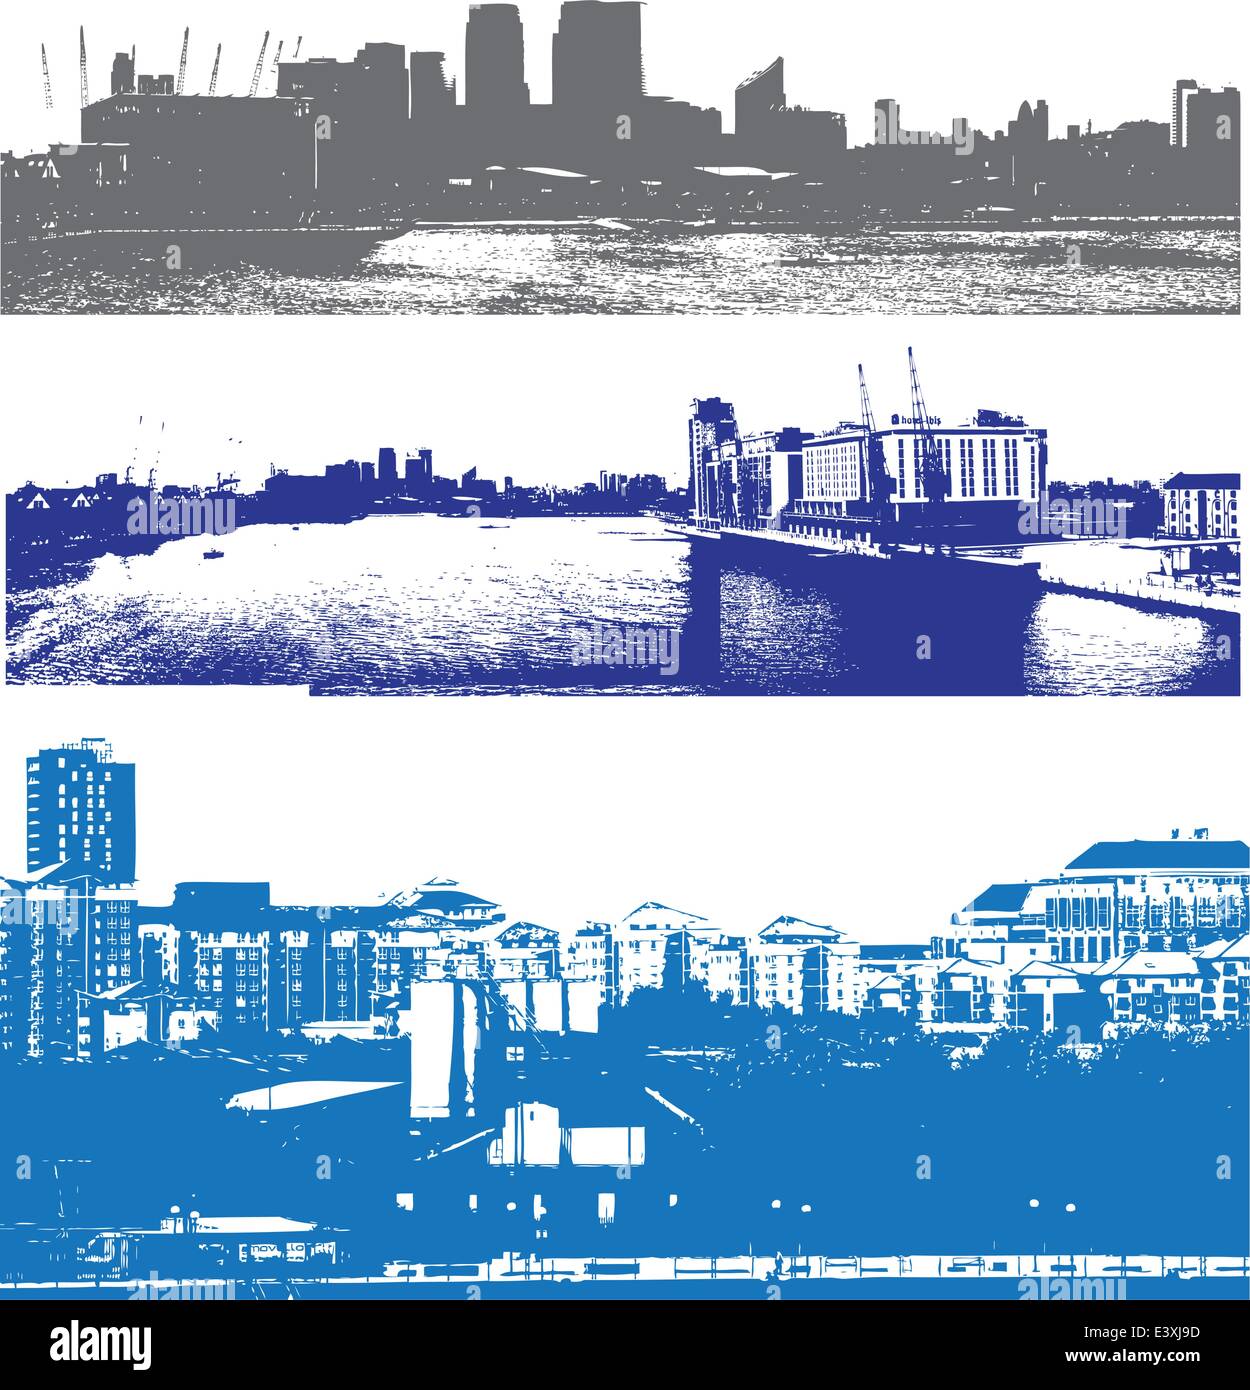 Toits de Londres comme vu de la Docklands dans un style urbain grunge Illustration de Vecteur